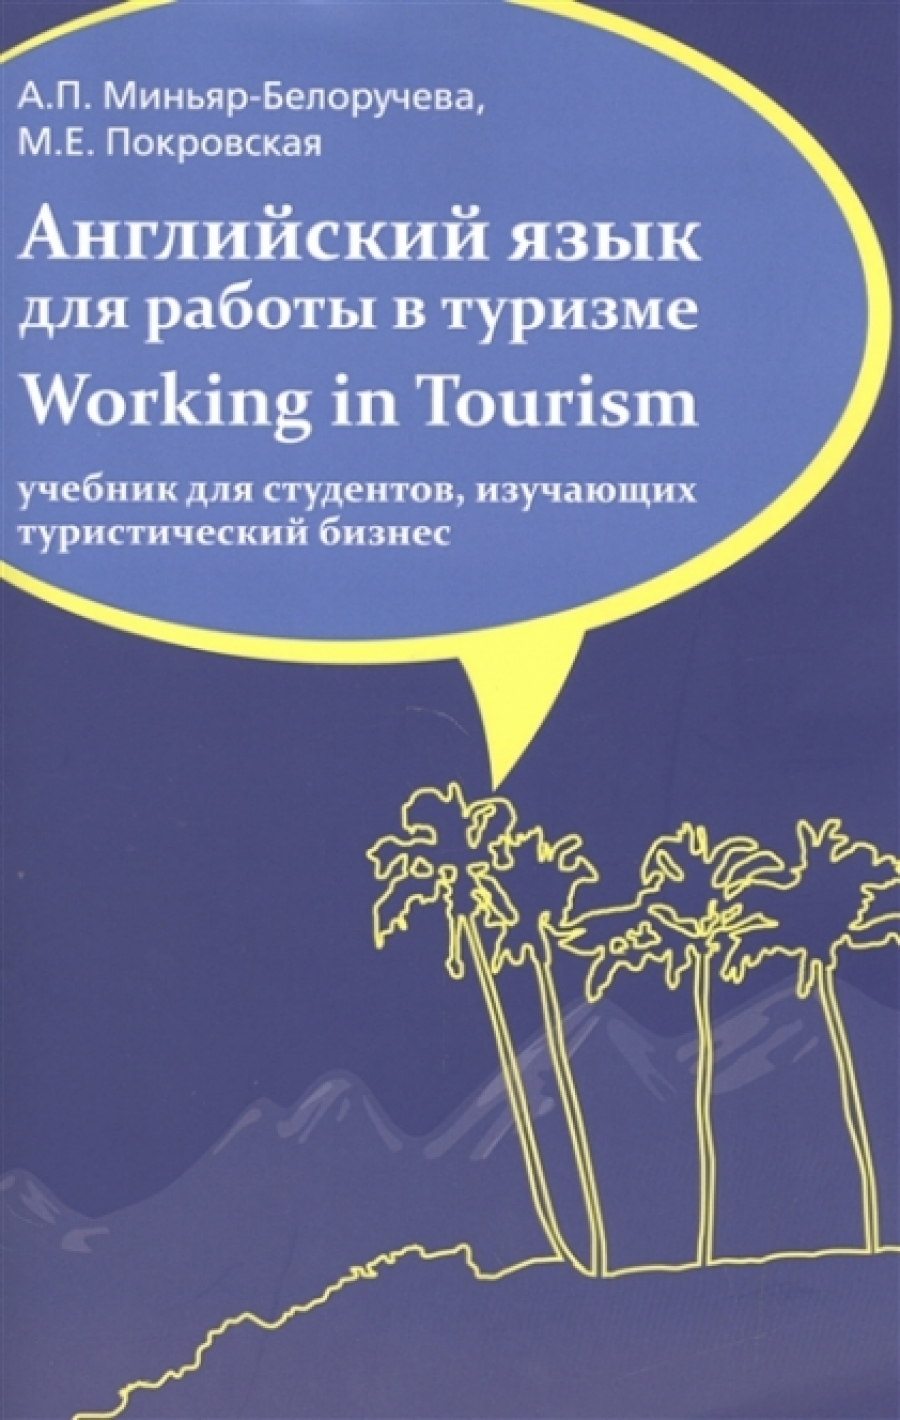 Покровская М.Е., Миньяр-Белоручева А.П. Английский язык для работы  в туризме / Working in Tourism 